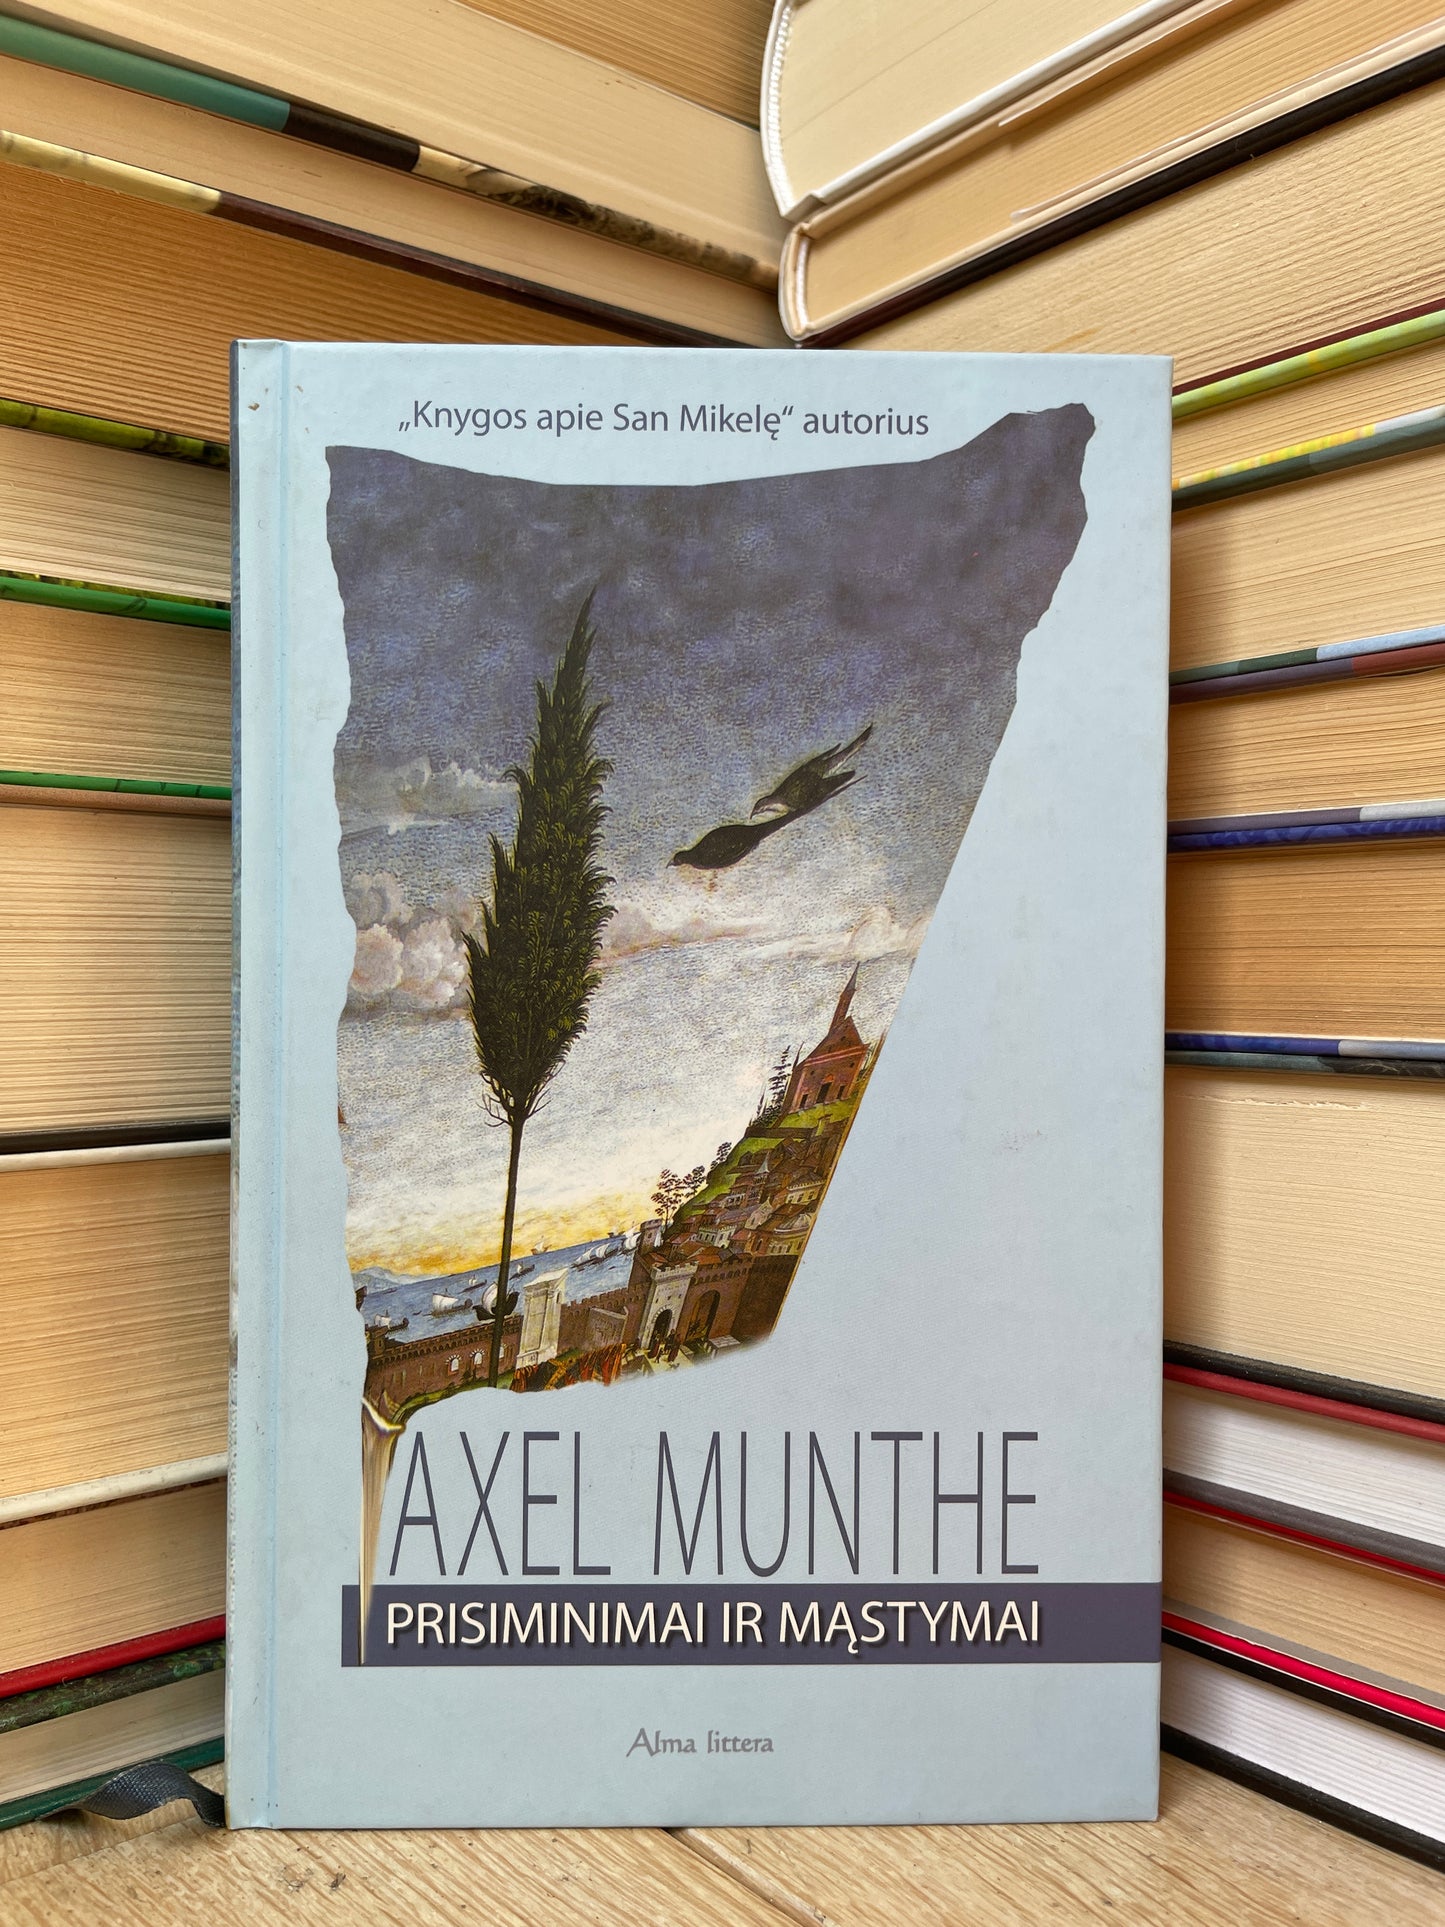 Axel Munthe - ,,Prisiminimai ir mąstymai"